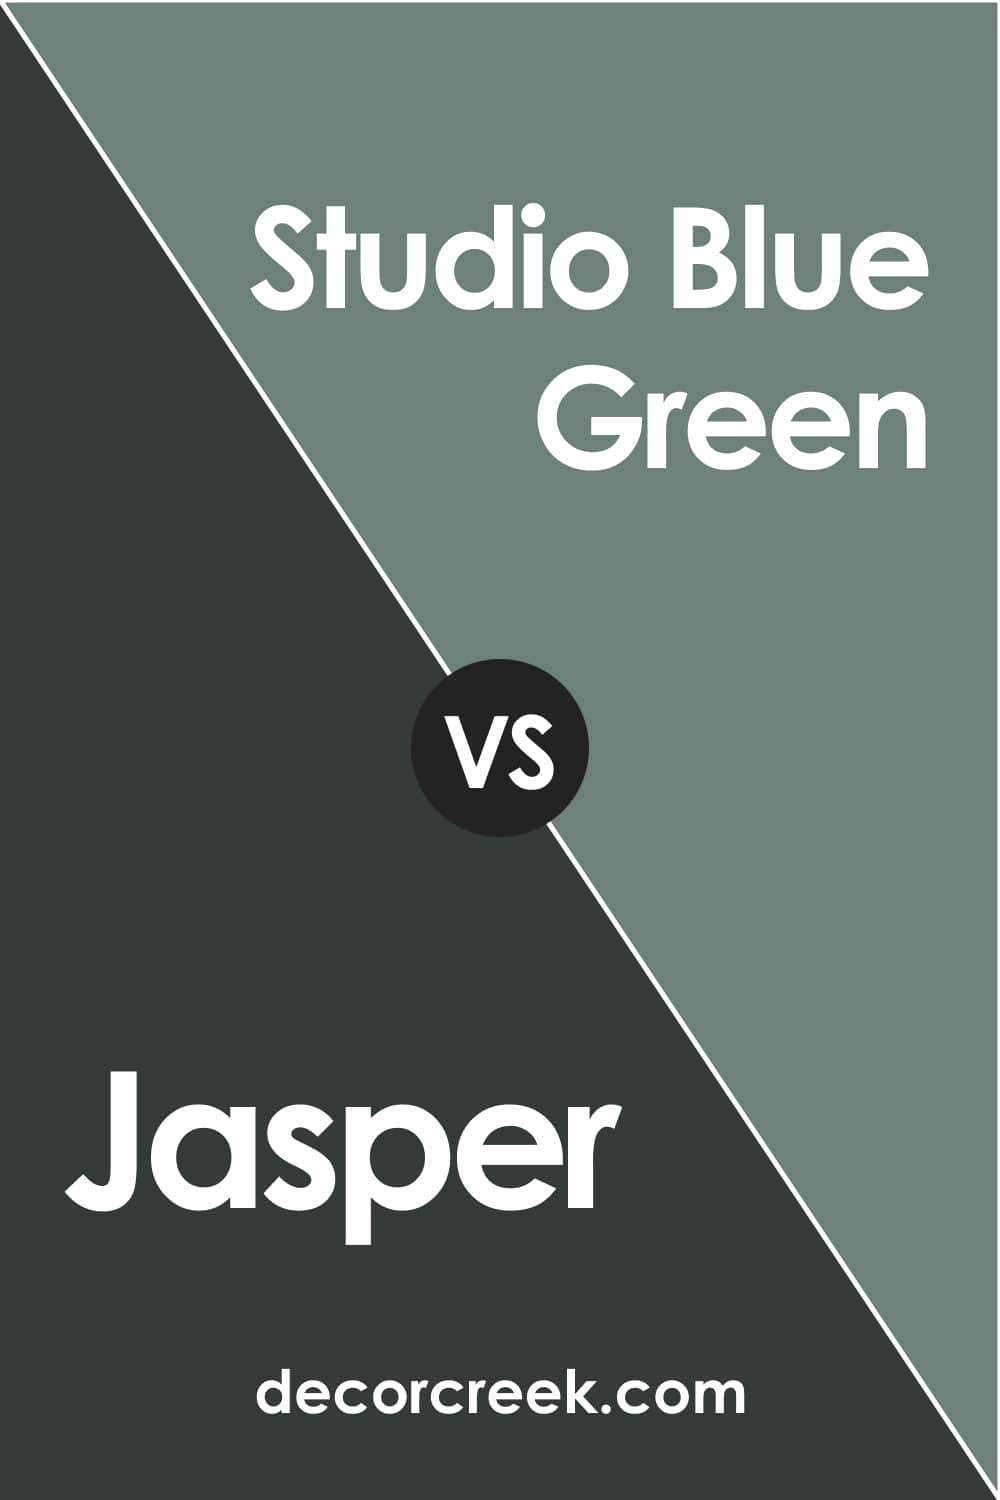 Jasper vs Studio Blue Green